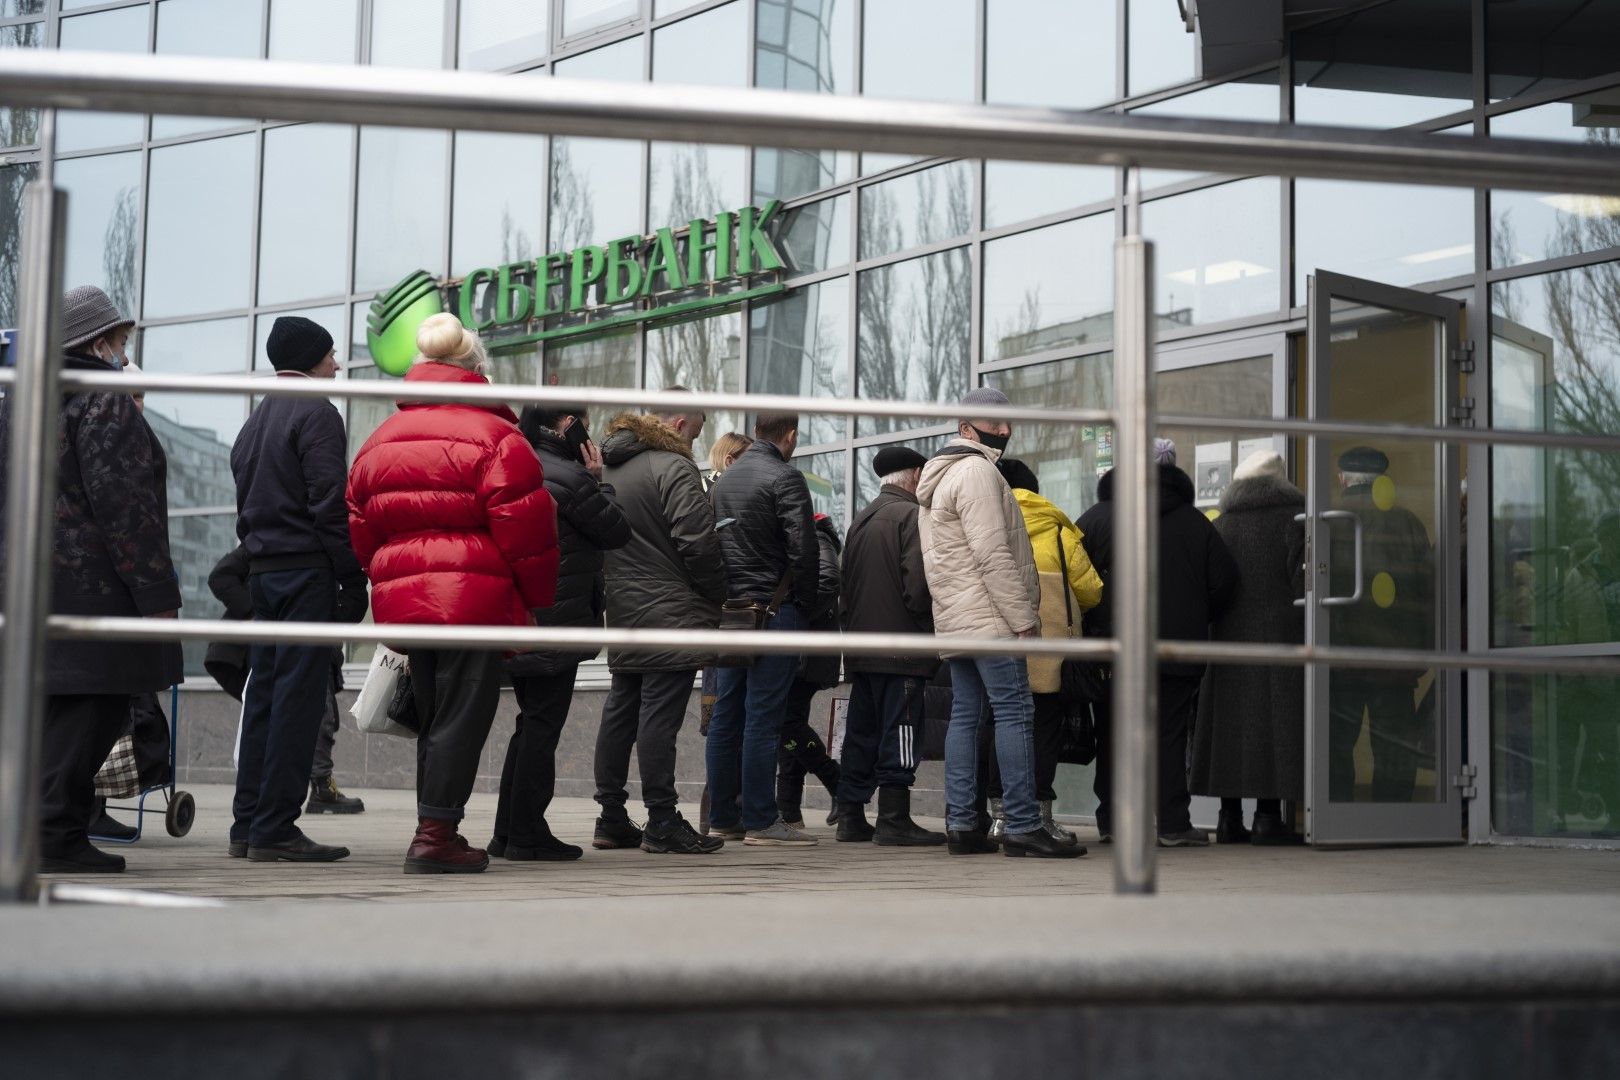 Опашка пред клон на СБЕРбанк в Москва през месец март